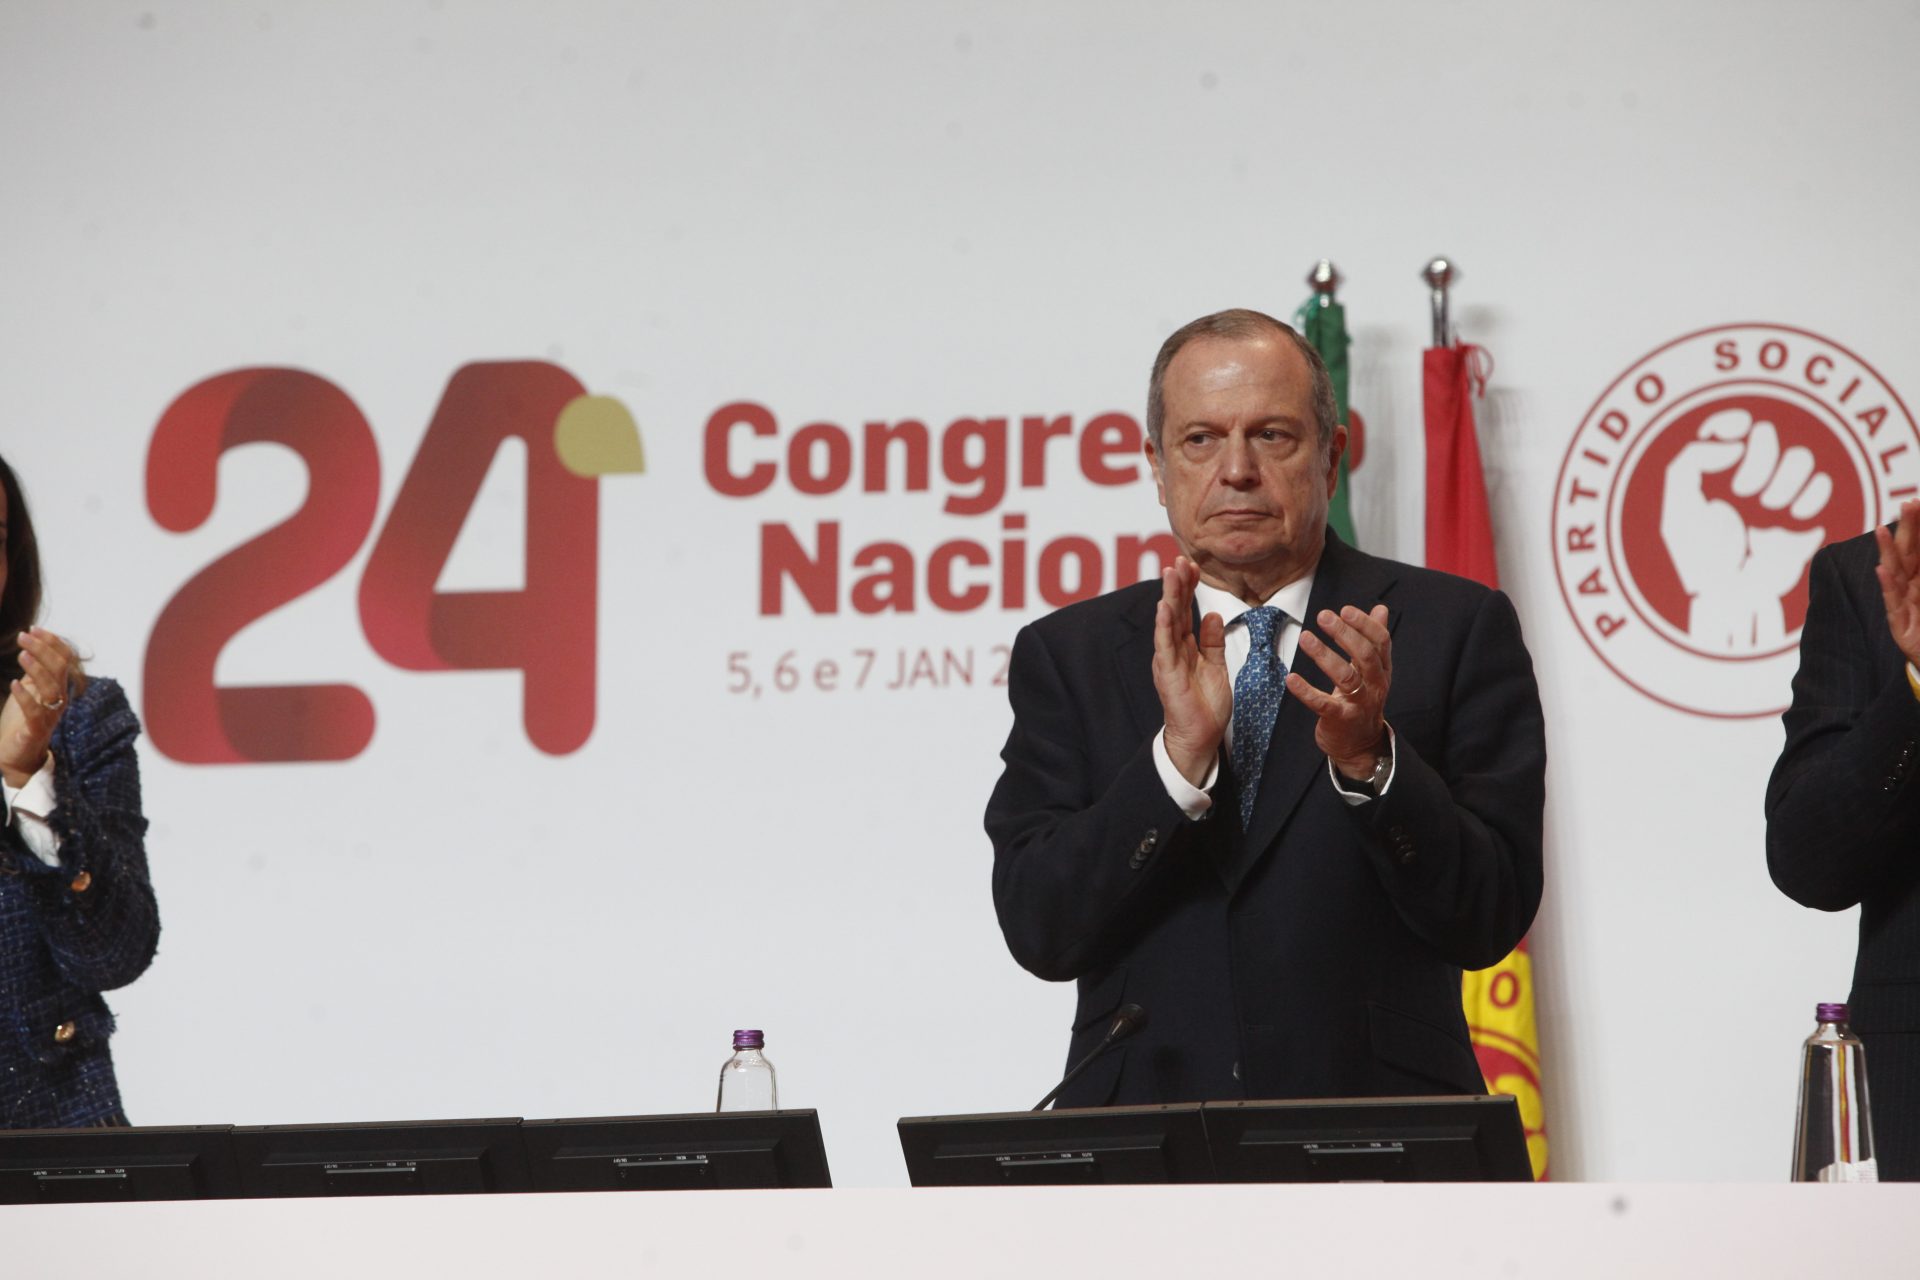 Carlos César acusa Marcelo: “Não fez o que era politicamente devido”